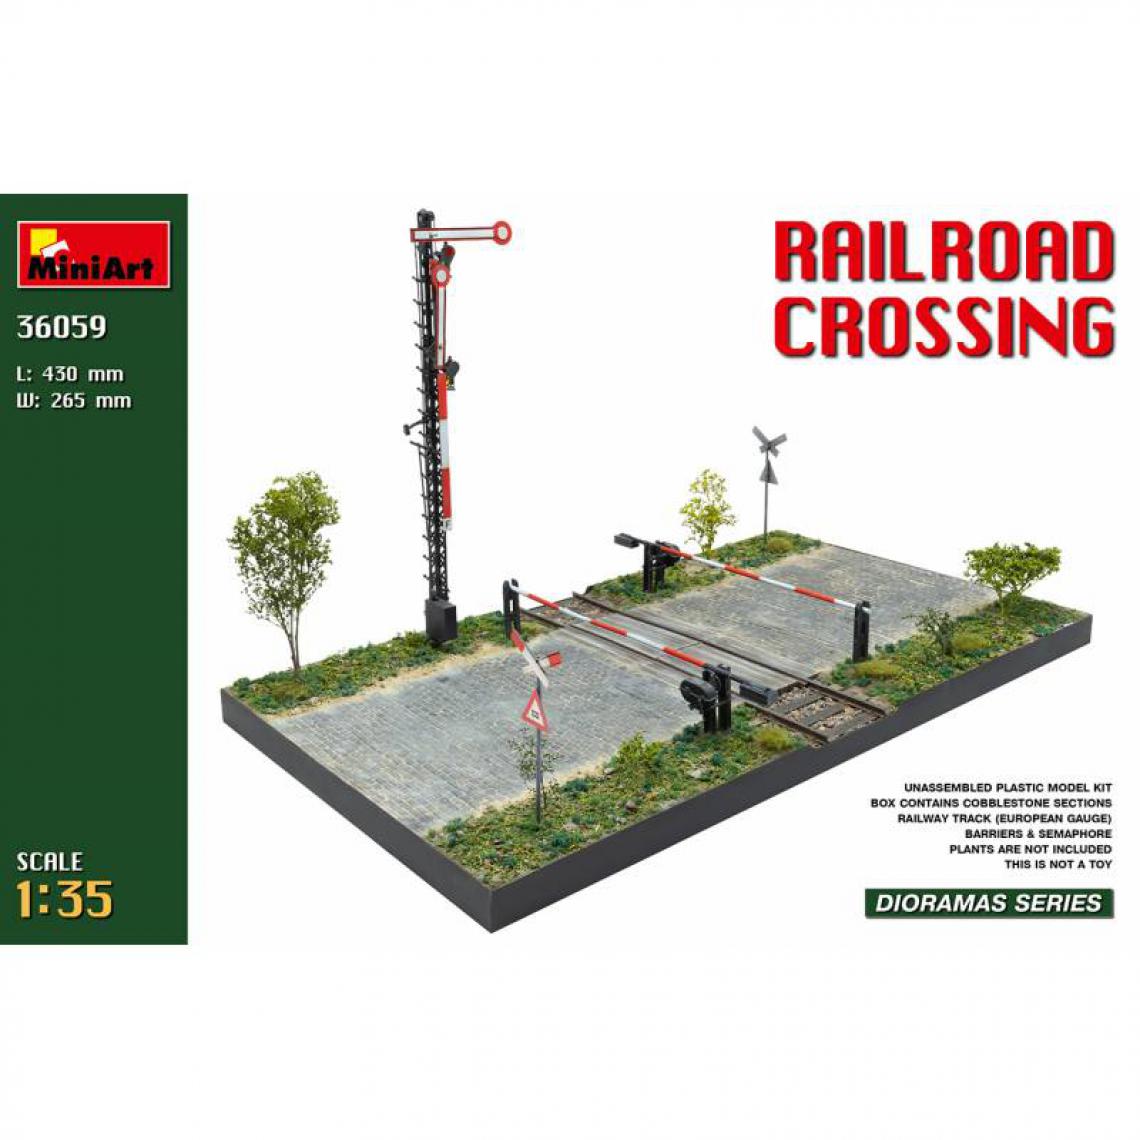 Mini Art - Railroad Crossing - Décor Modélisme - Accessoires maquettes